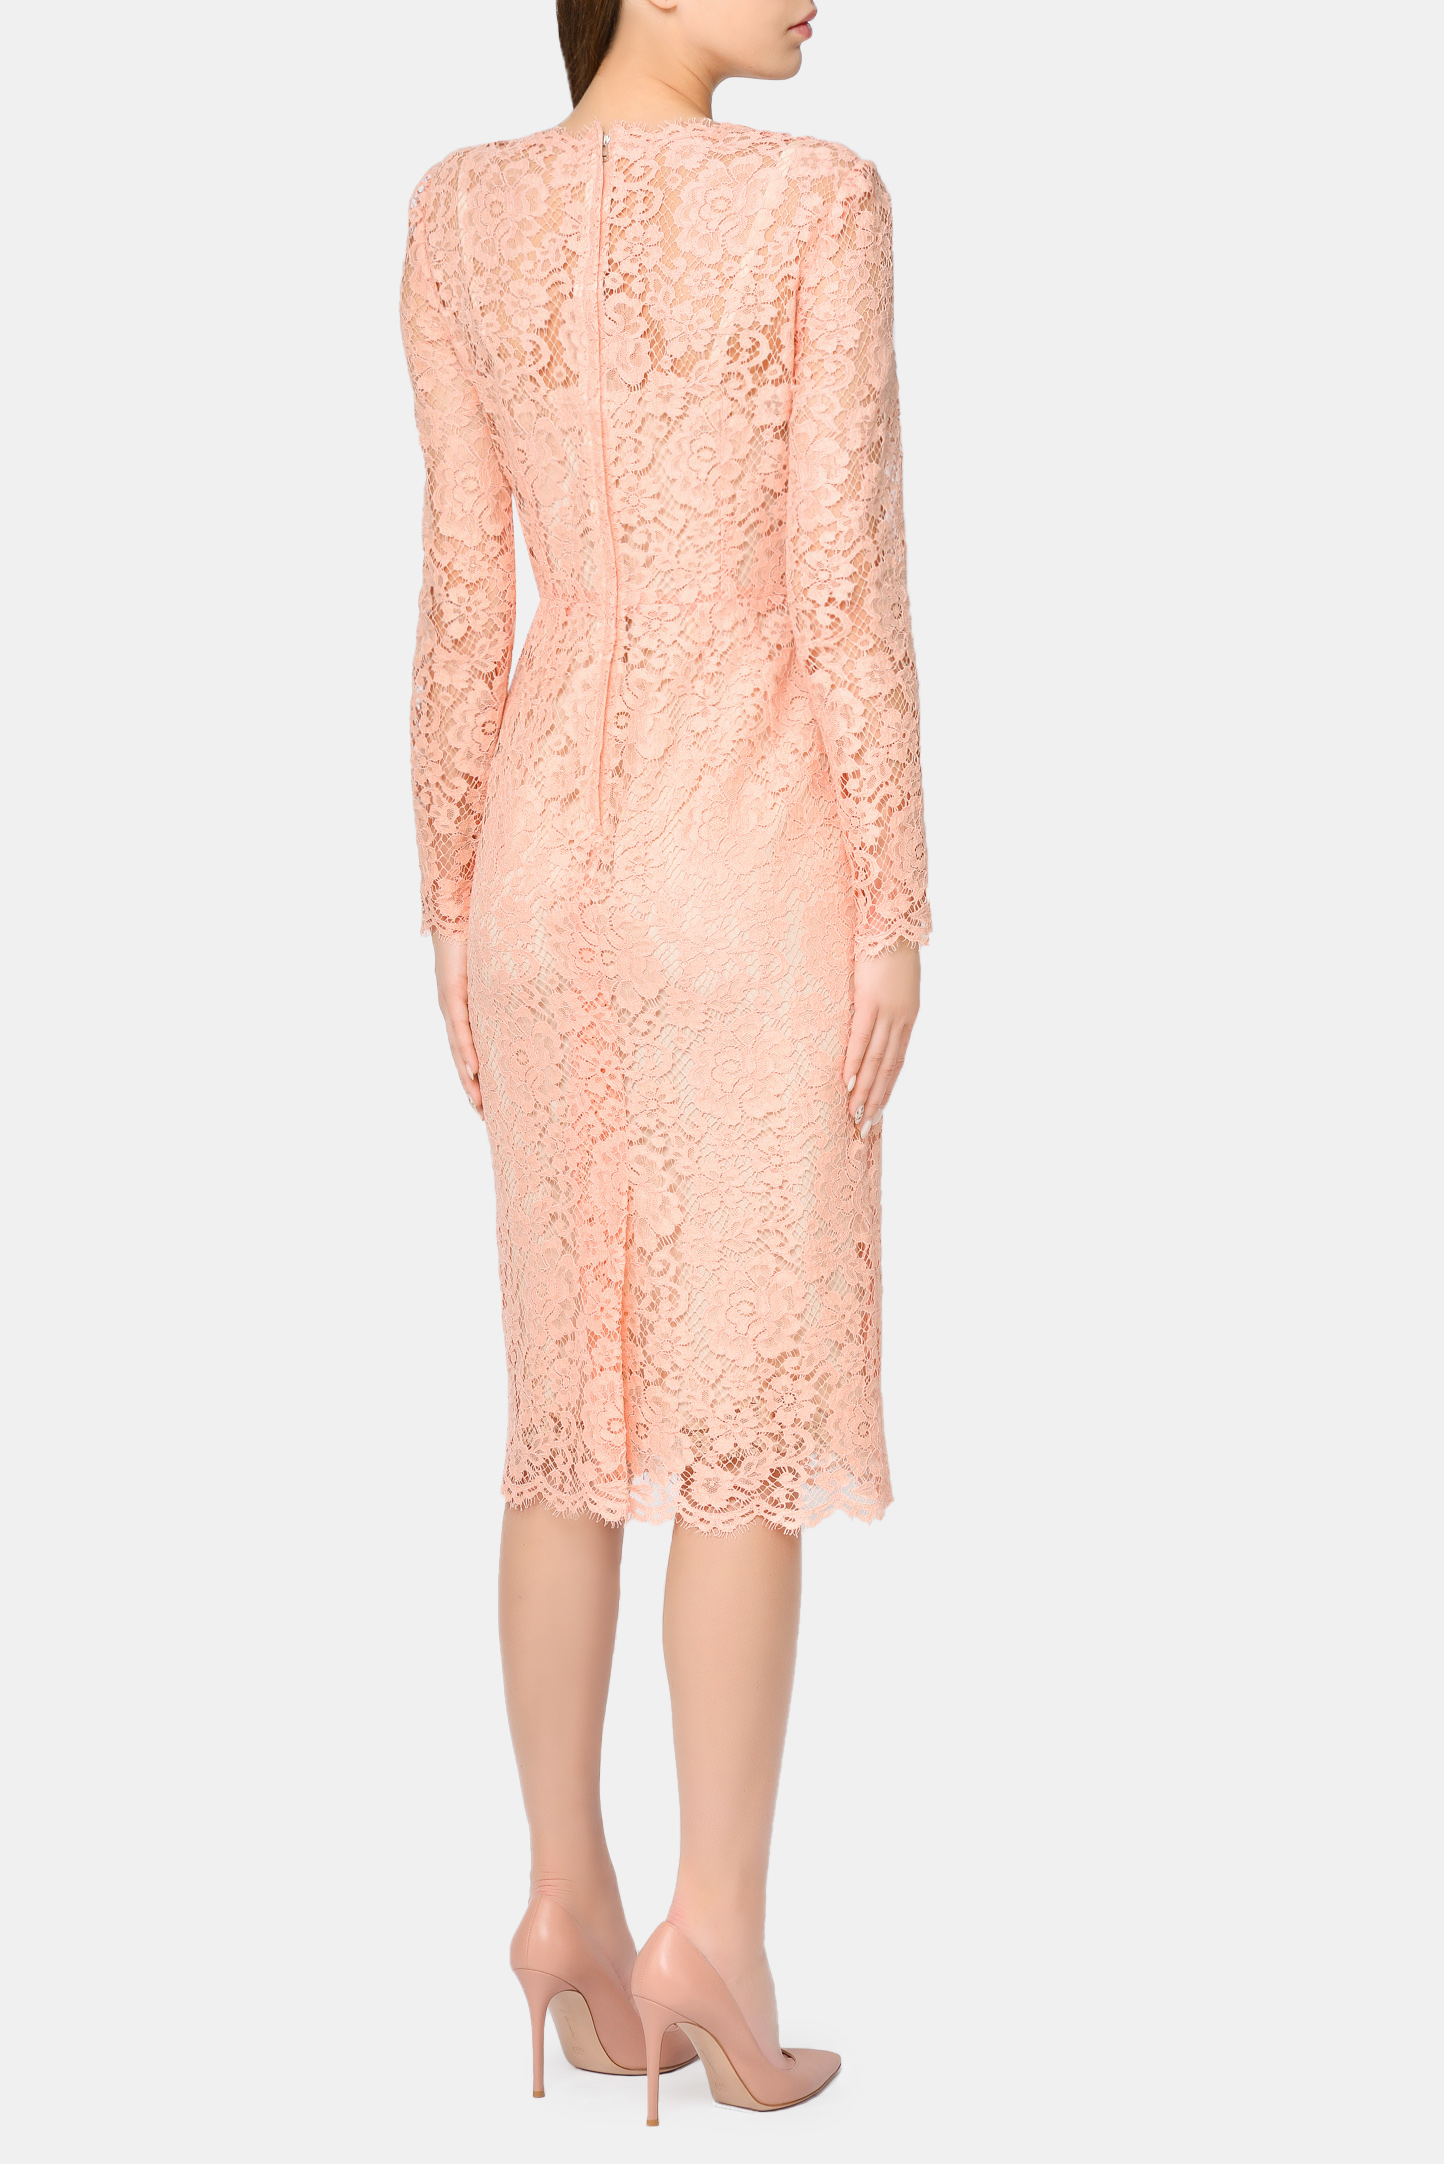 Платье DOLCE & GABBANA F6M0DT HLM0M, цвет: Персиковый, Женский